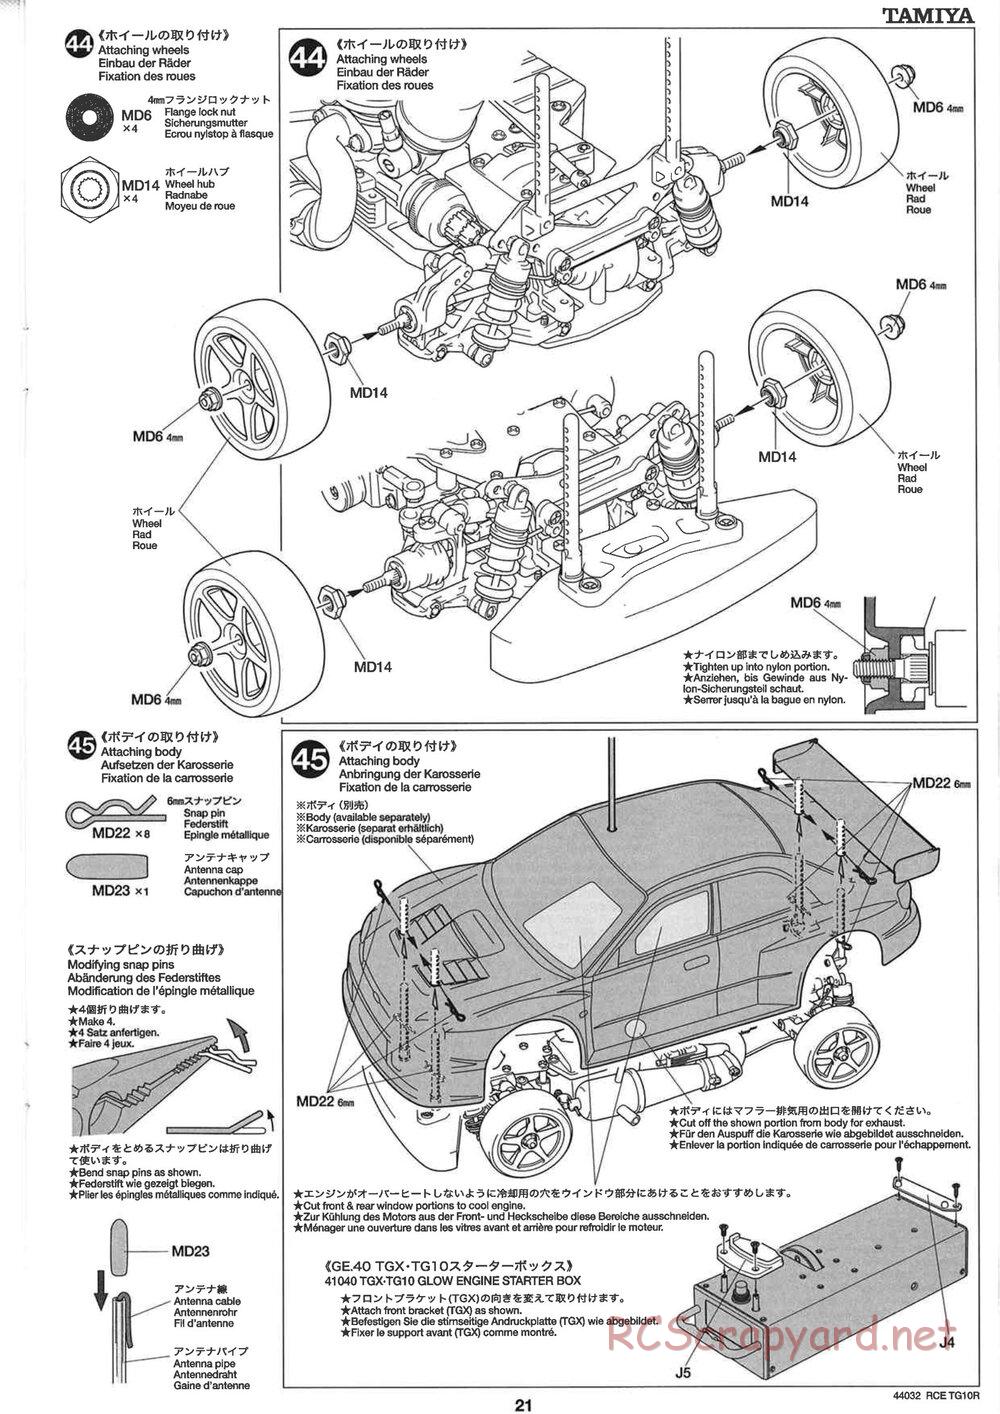 Tamiya - TG10R Chassis - Manual - Page 21